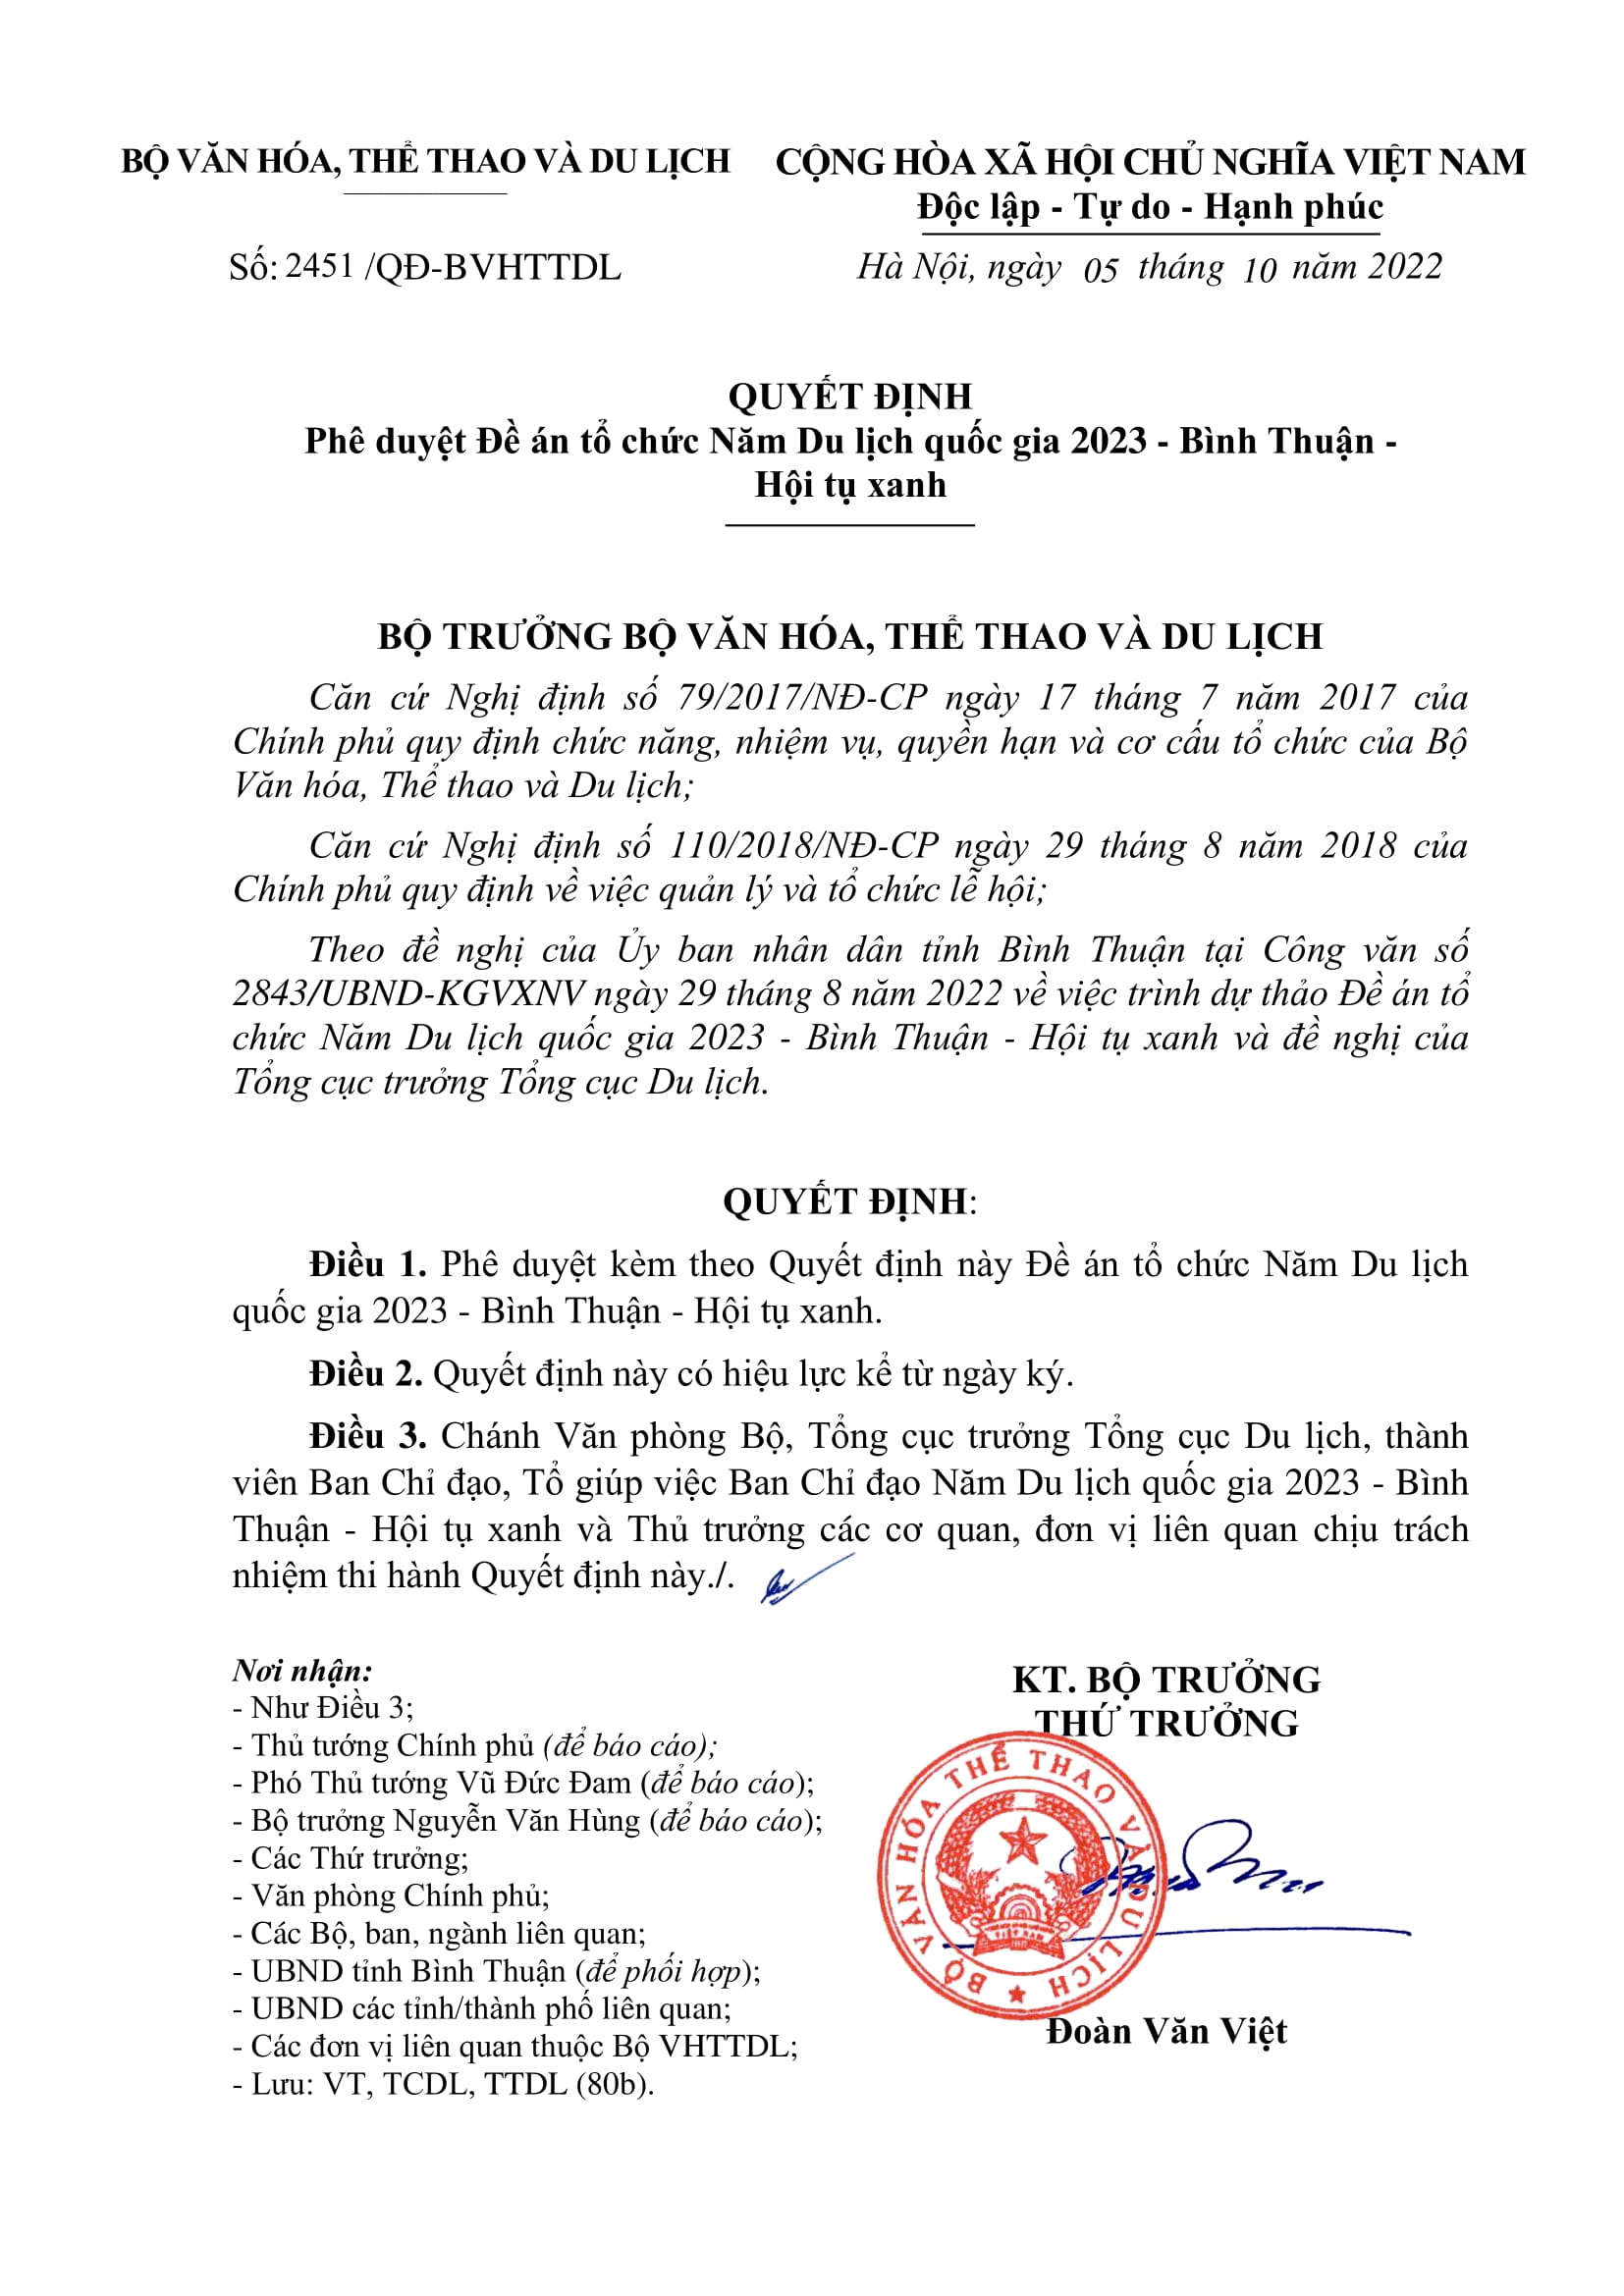 QUYẾT ĐỊNH - Phê duyệt Đề án tổ chức Năm Du lịch quốc gia 2023 - Bình Thuận - Hội tụ xanh.